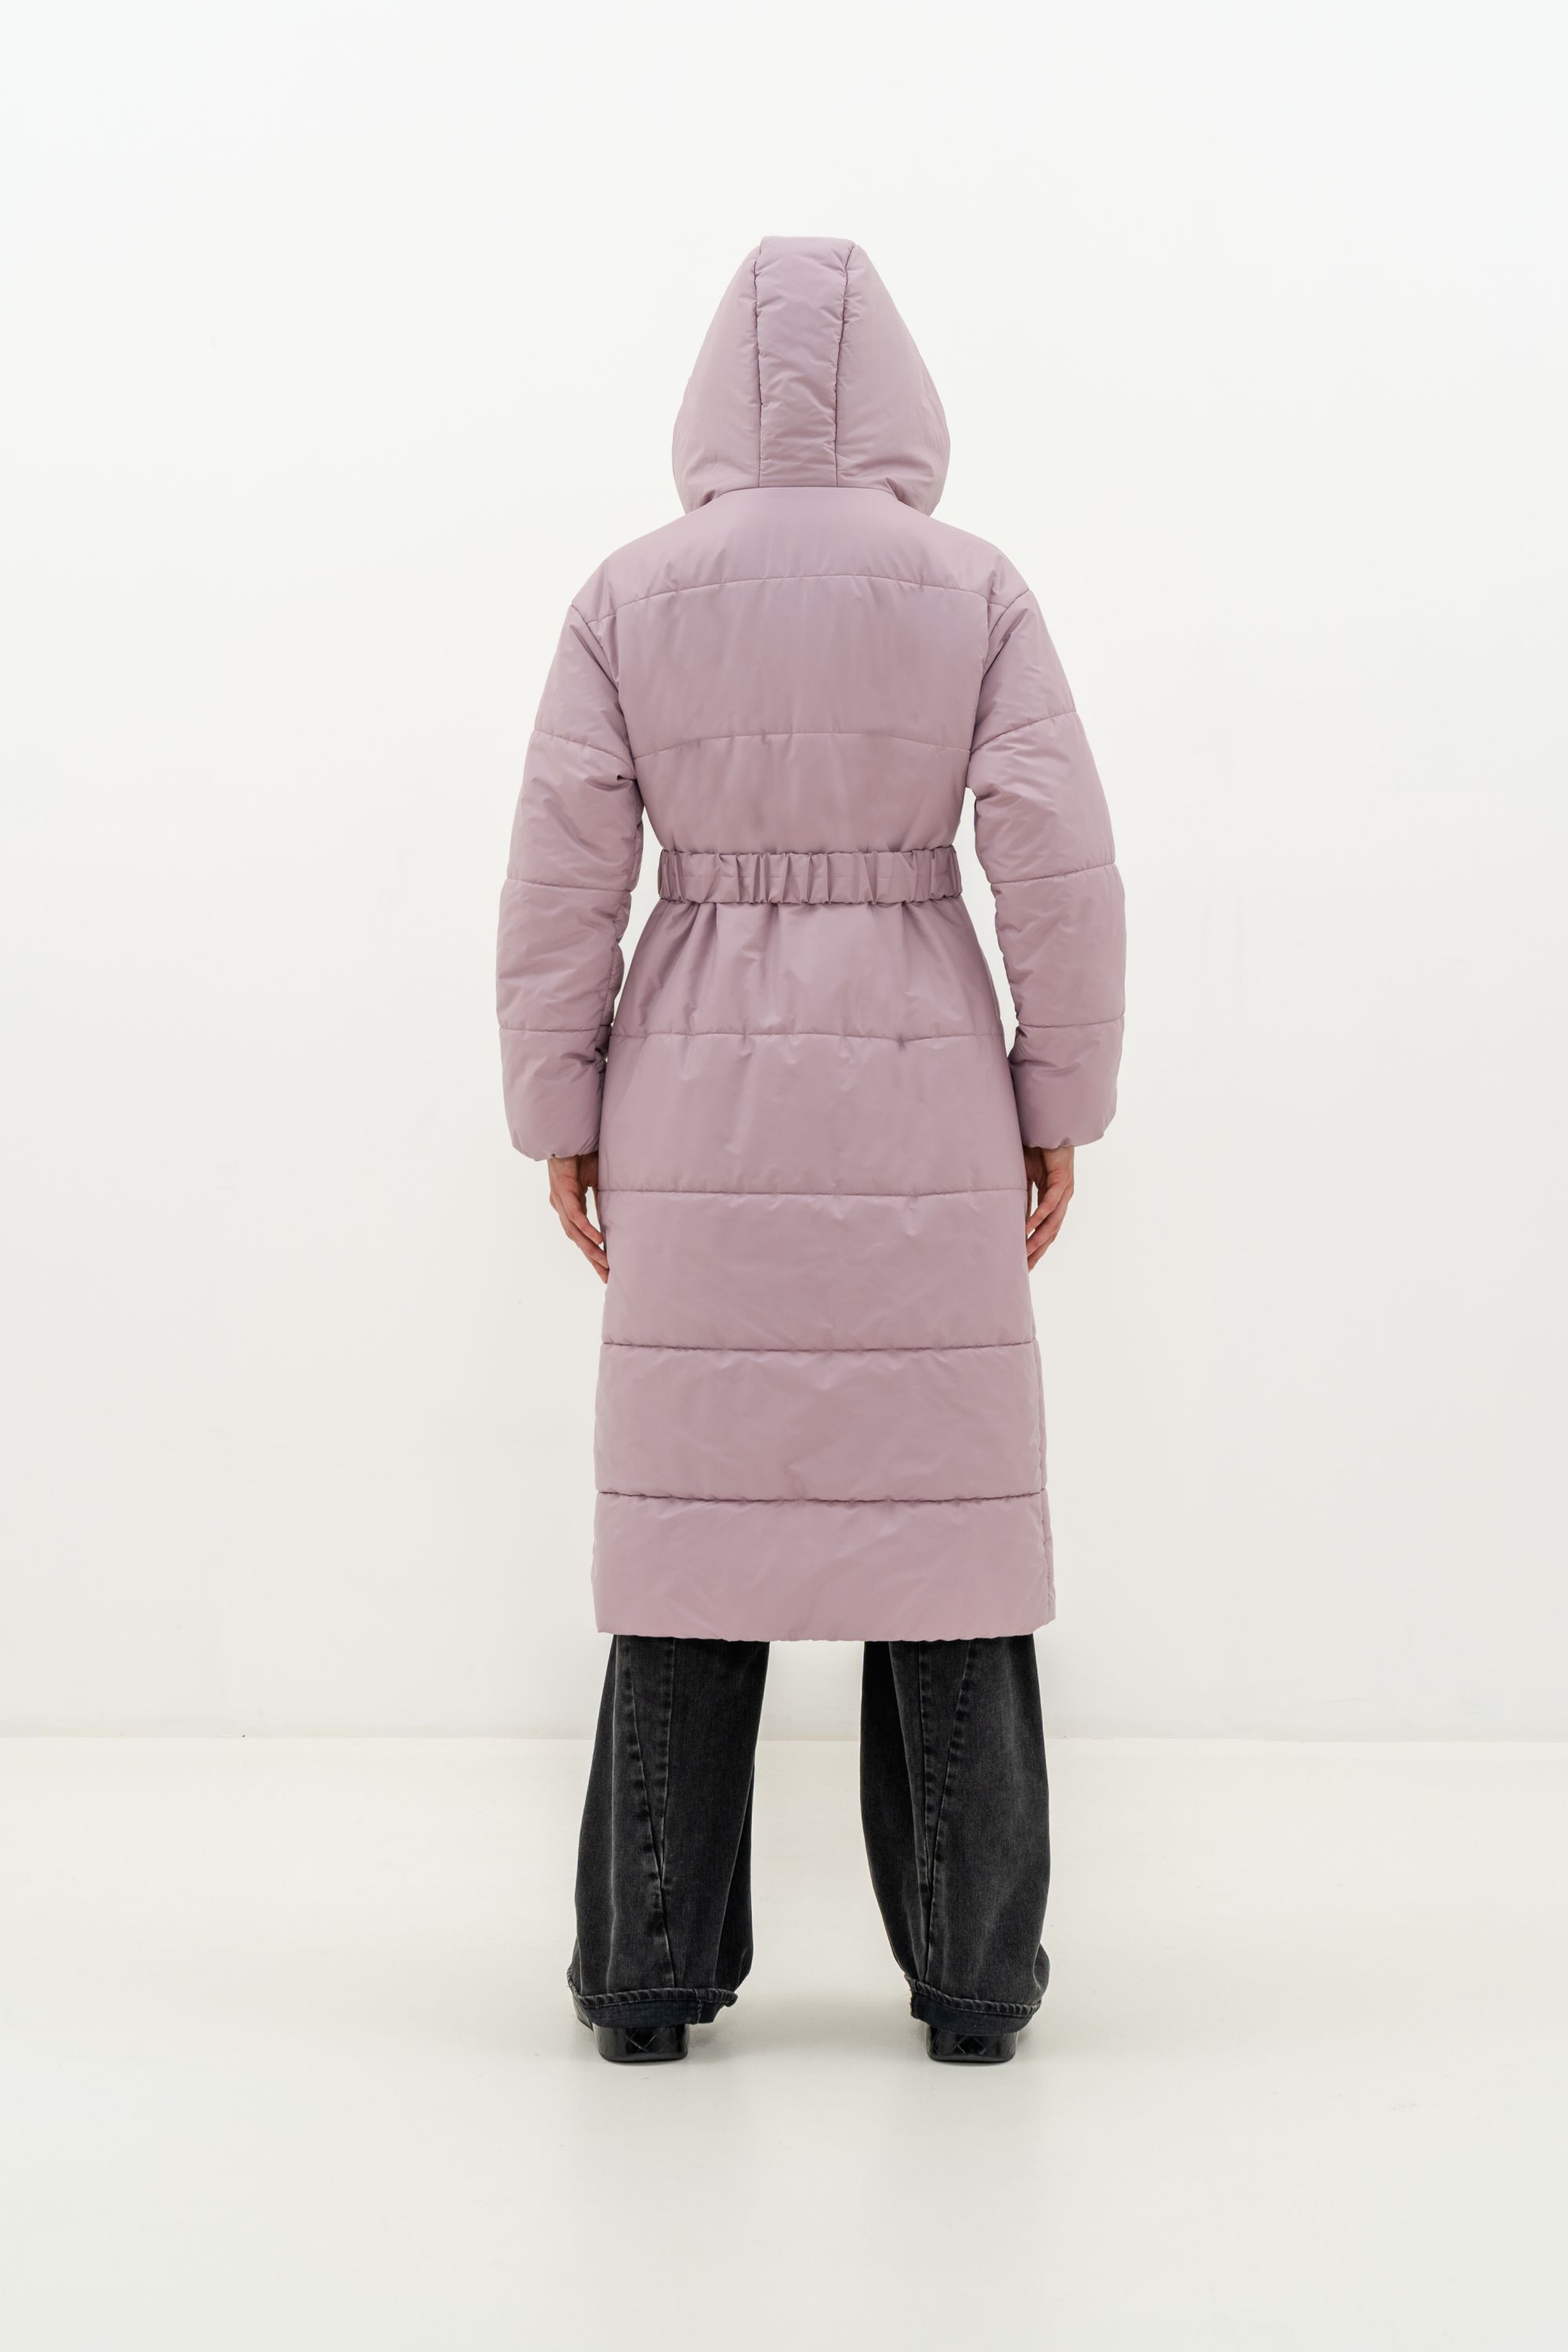 Пальто женское плащевое утепленное 5-12173-1. Фото 4.